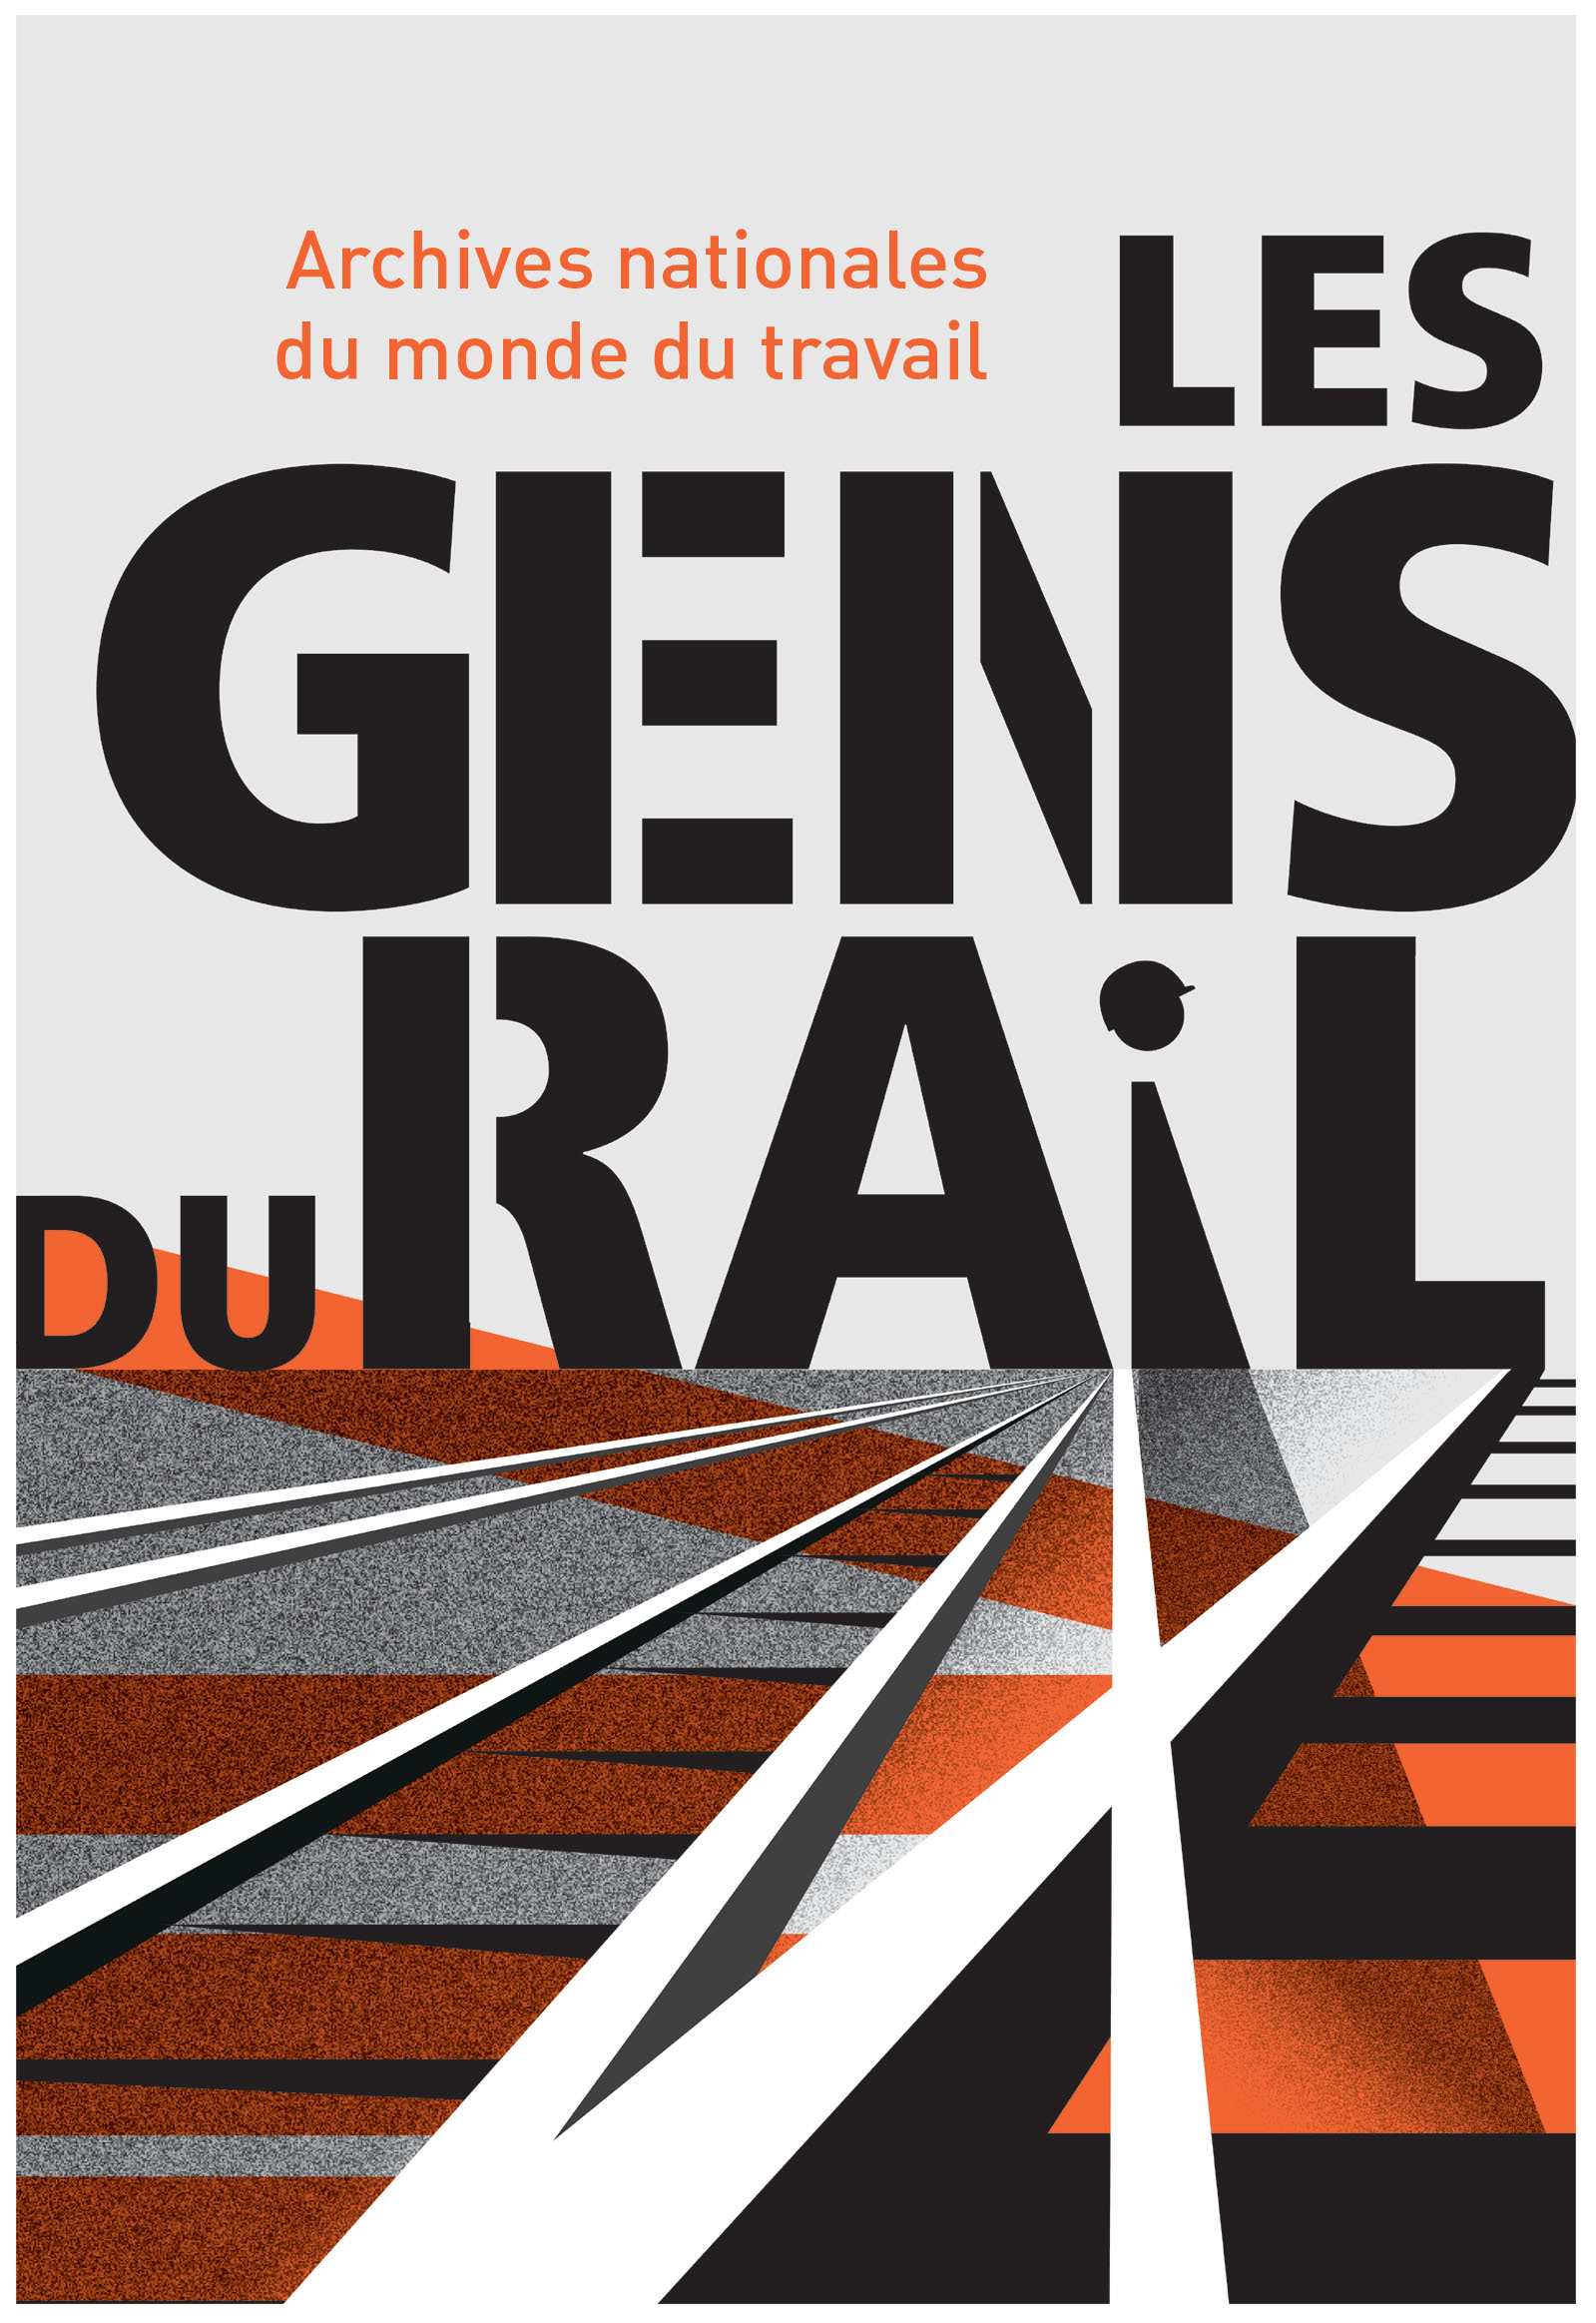 「鐵路人群像」（Les Gens du rail）特展